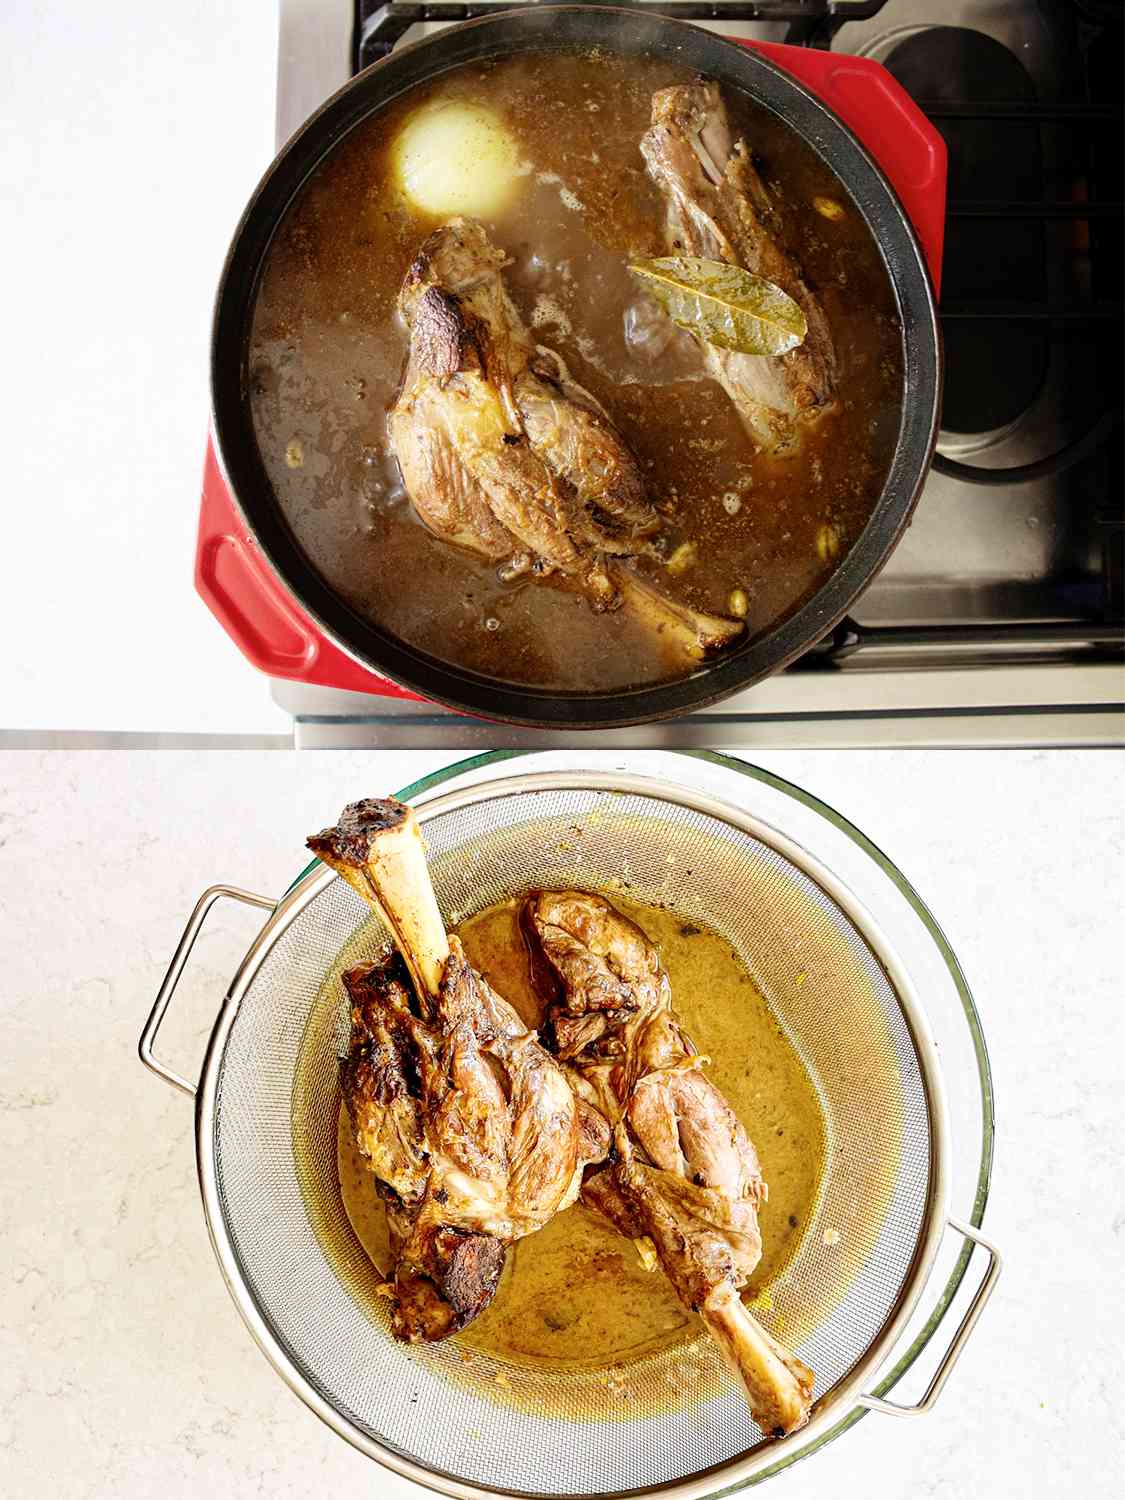 两个图像拼贴。上图:炉子上的荷兰烤炉里烤着羊肉。下图:小羊在玻璃碗上被过滤